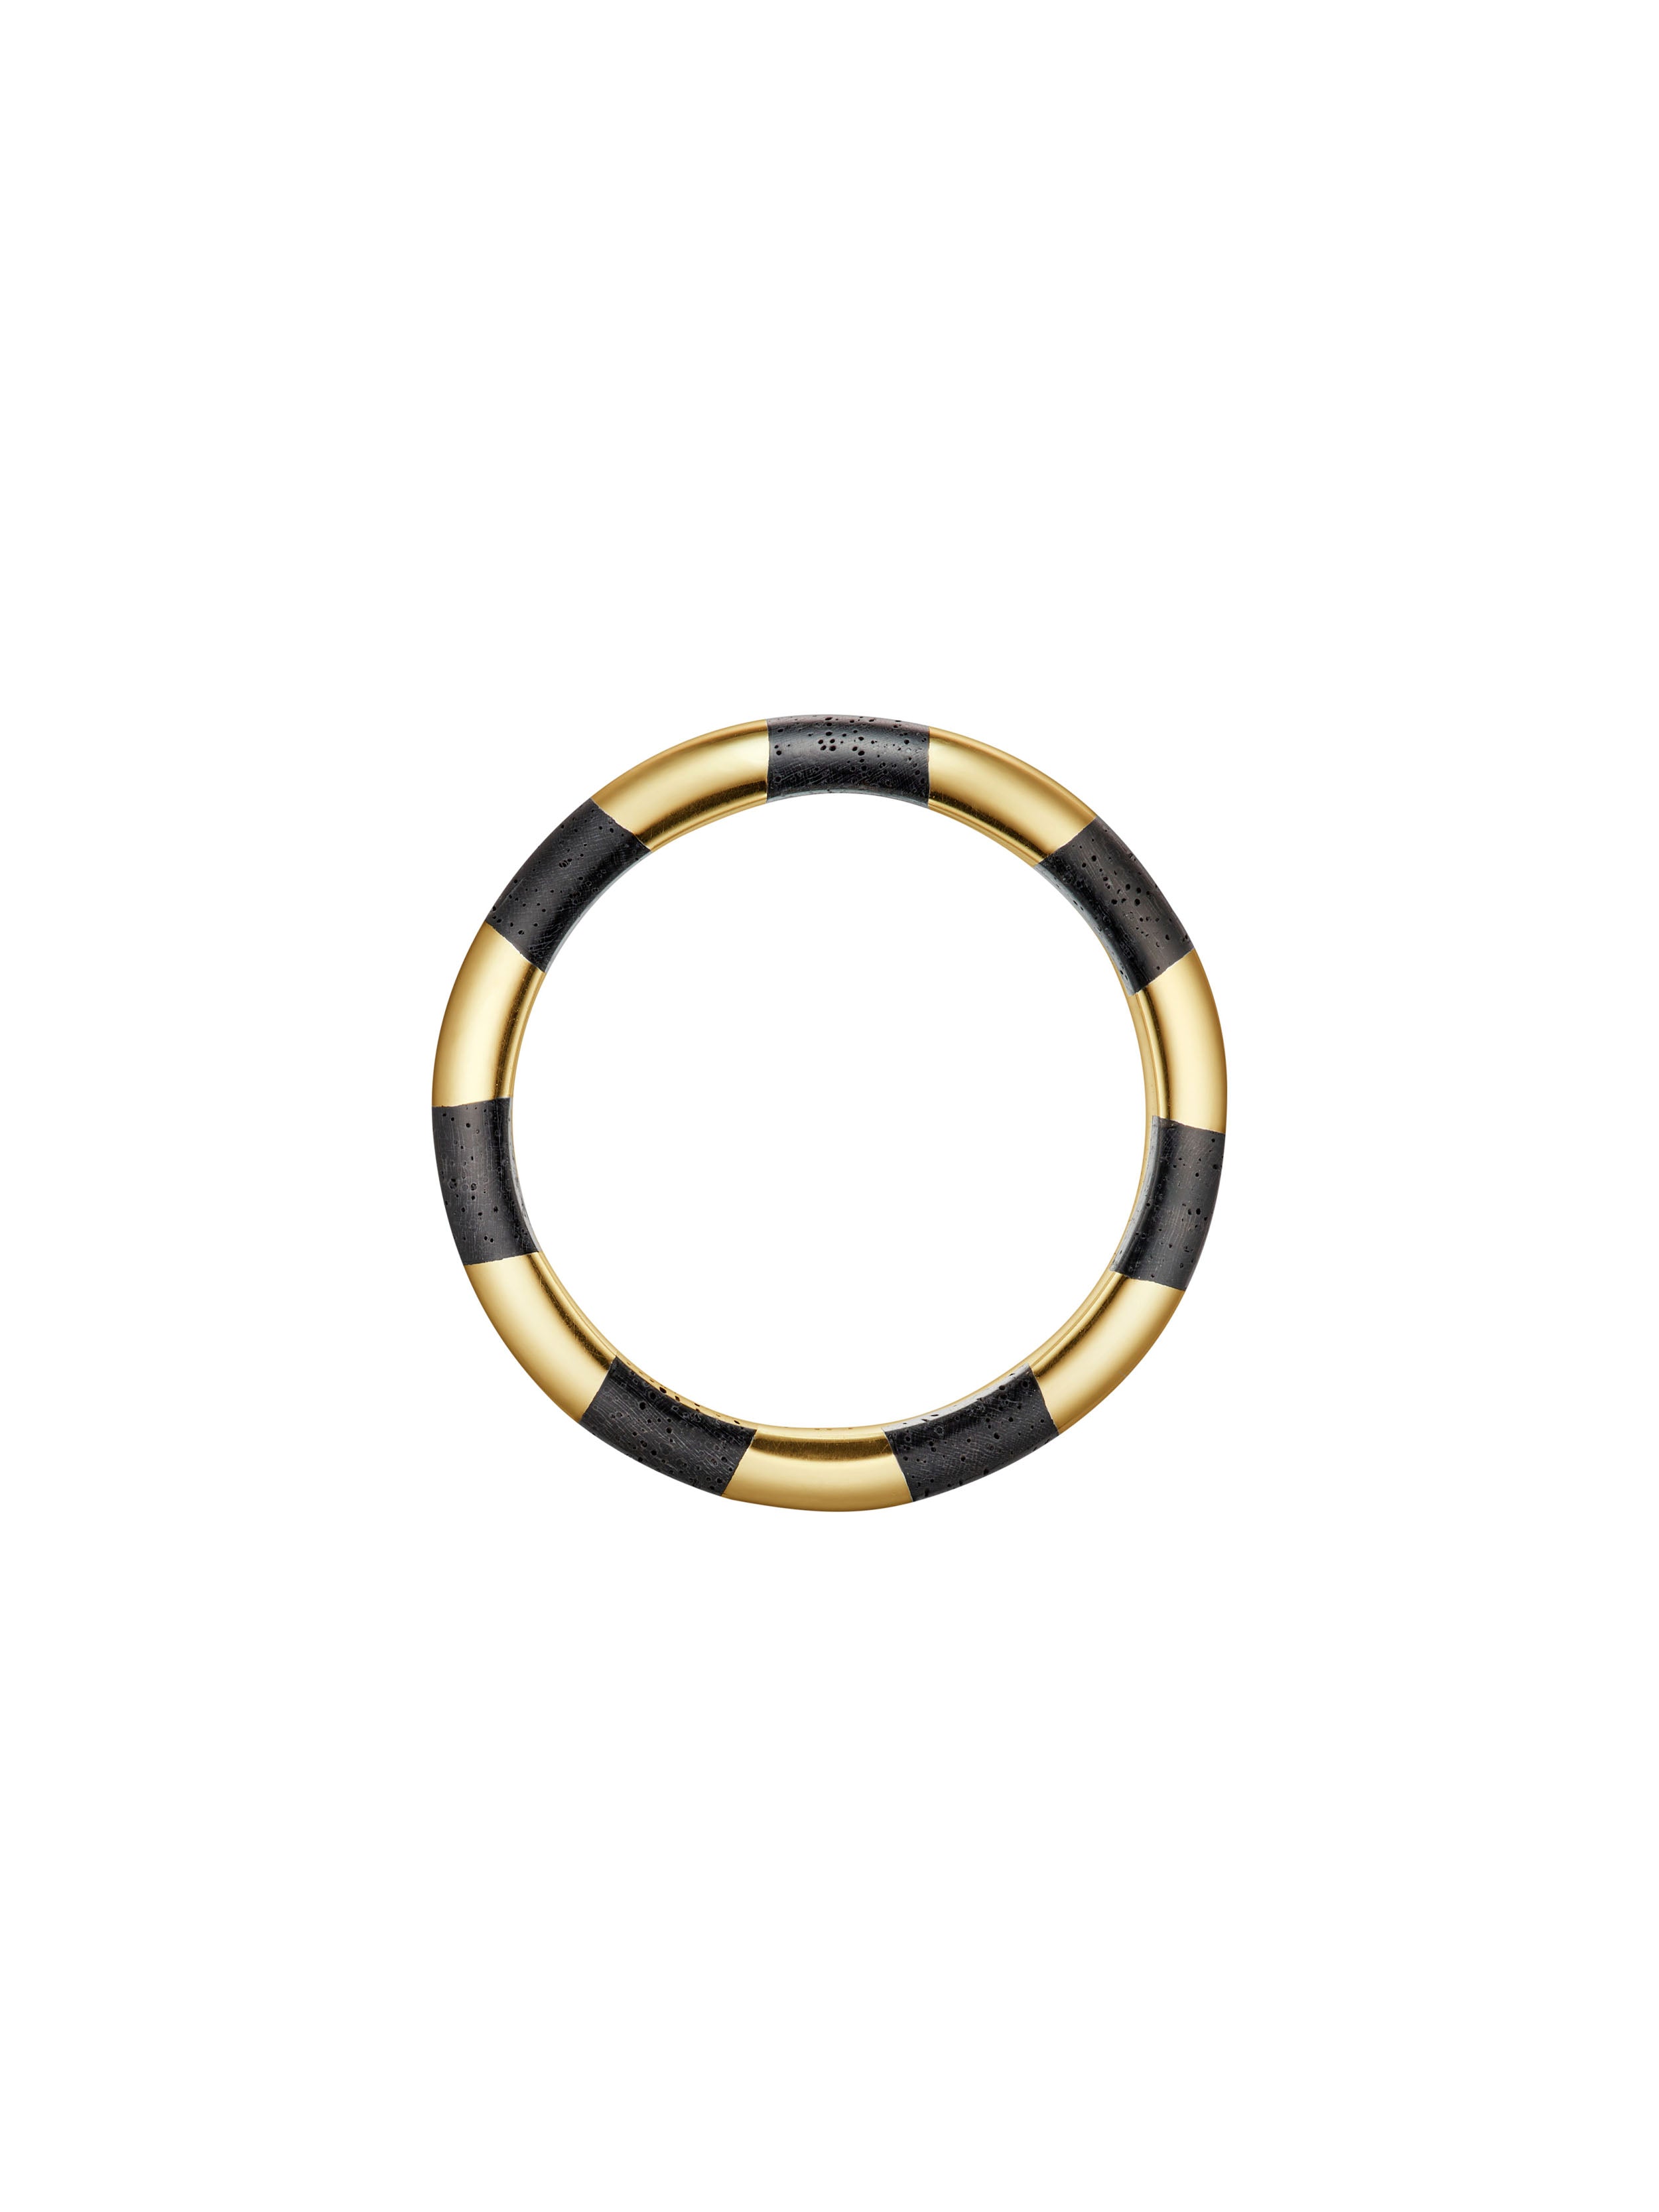 KINRADEN APS HANNA Ring - 18k gold Rings